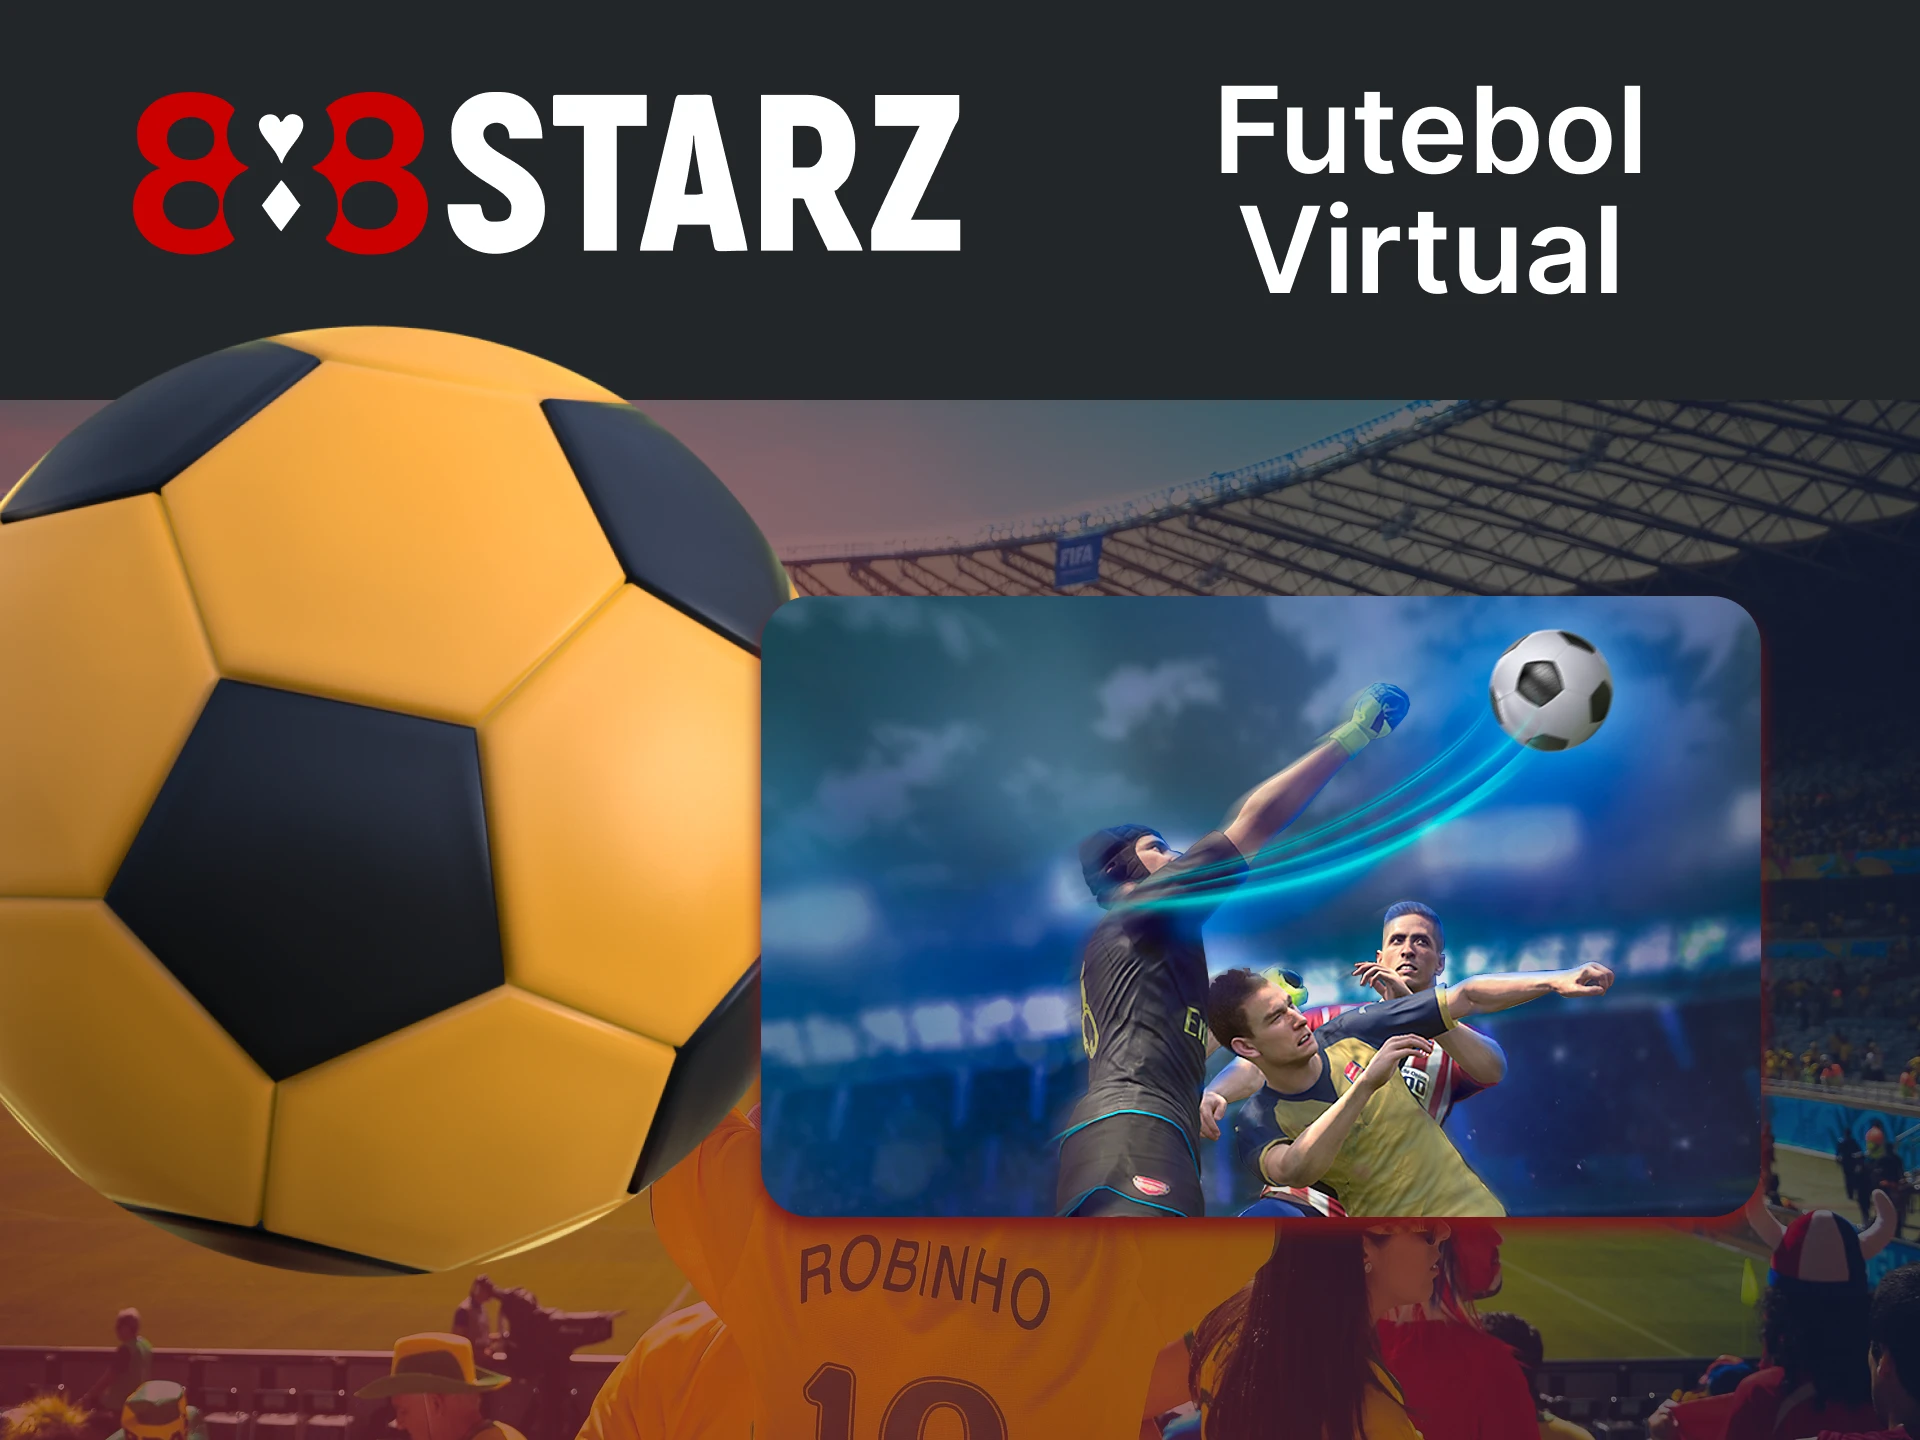 Para apostar no futebol virtual no 888starz, vá para a seção certa.